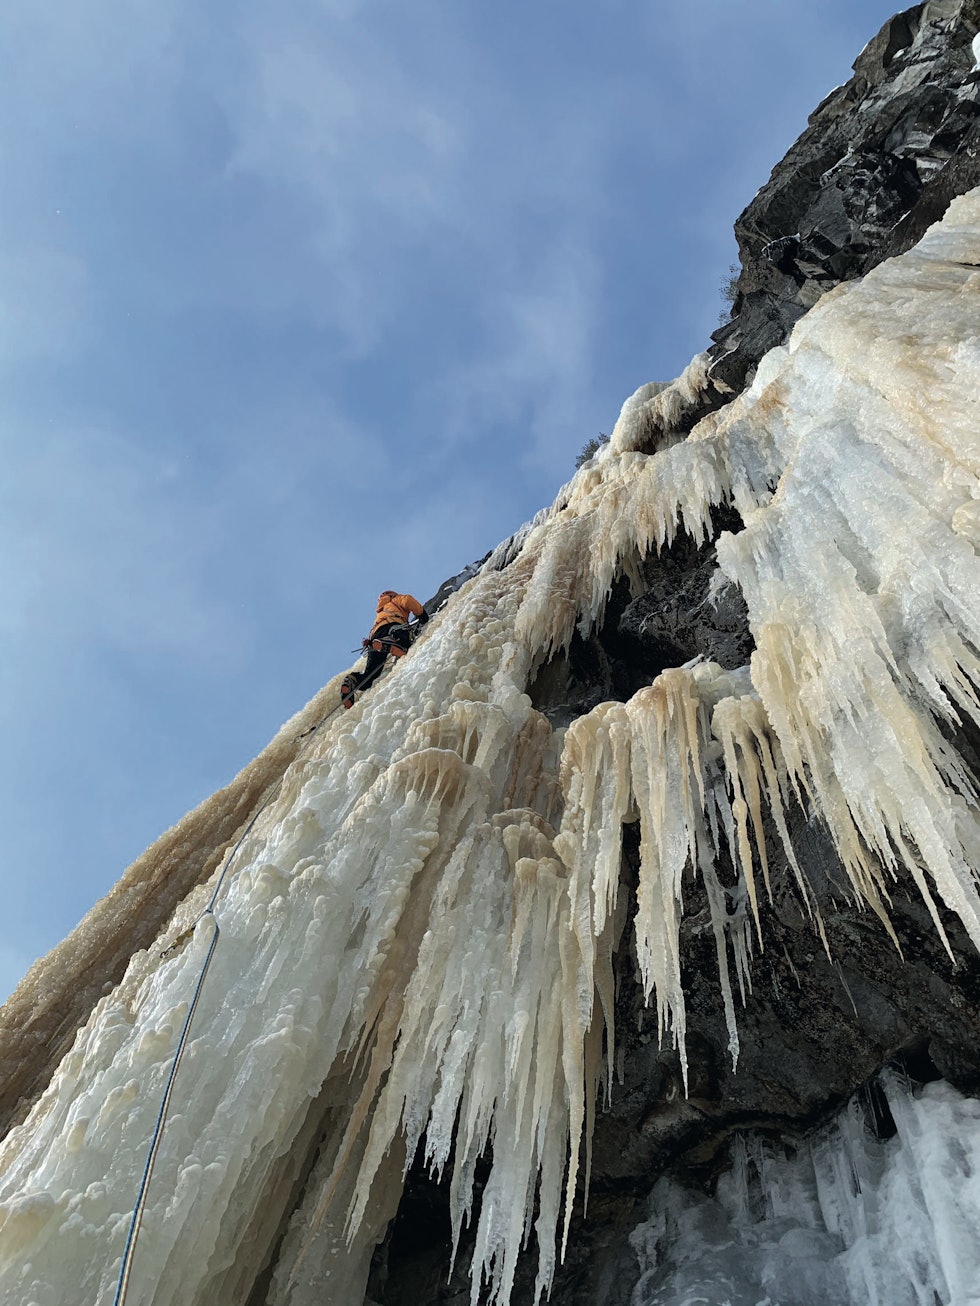 Bratt is: Thomas på led på tredje taulengde på Bakkekollen (WI 5+, 4 tl.) sist vinter. Thomas og O’Donnell klatret første gang sammen i Yosemite i 1981 og har hatt mange fine klatreturer sammen i løpet av 40 år. Foto: Michael O’Donnell